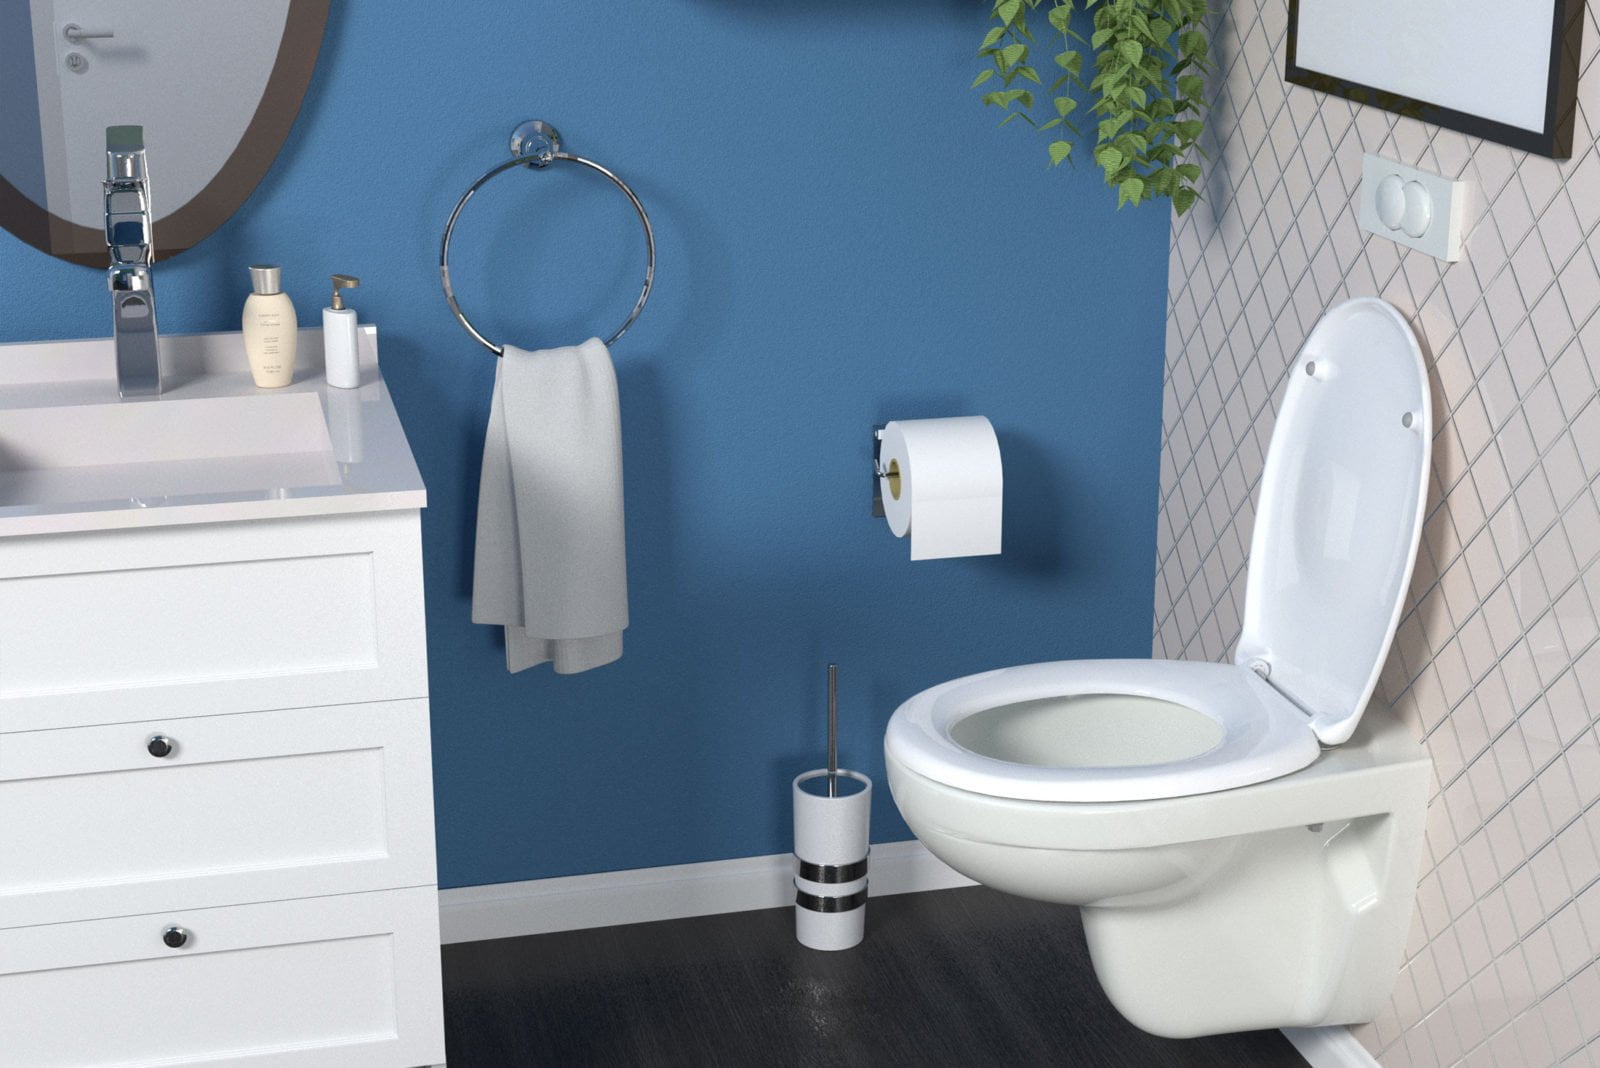 renderiranje wc sjedala u kupaonici bemis designer2 dizajn ambalaze packaging design